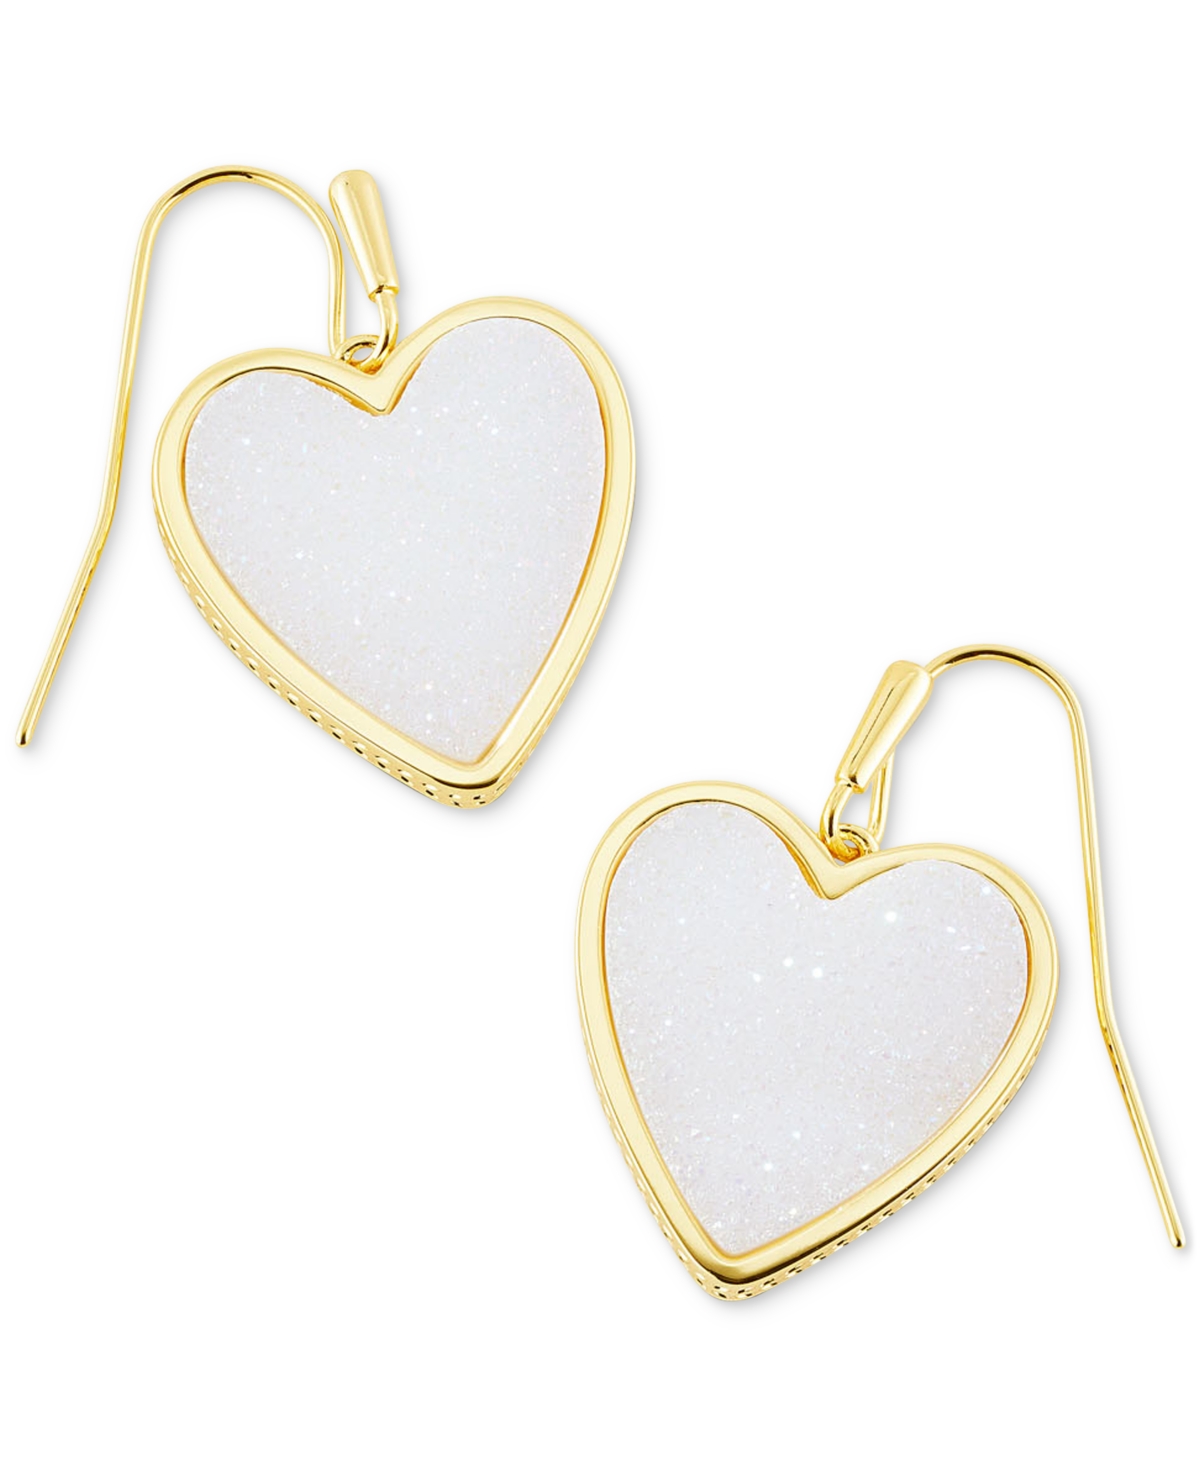 Kendra Scott Gold-Tone Heart Drop Earrings